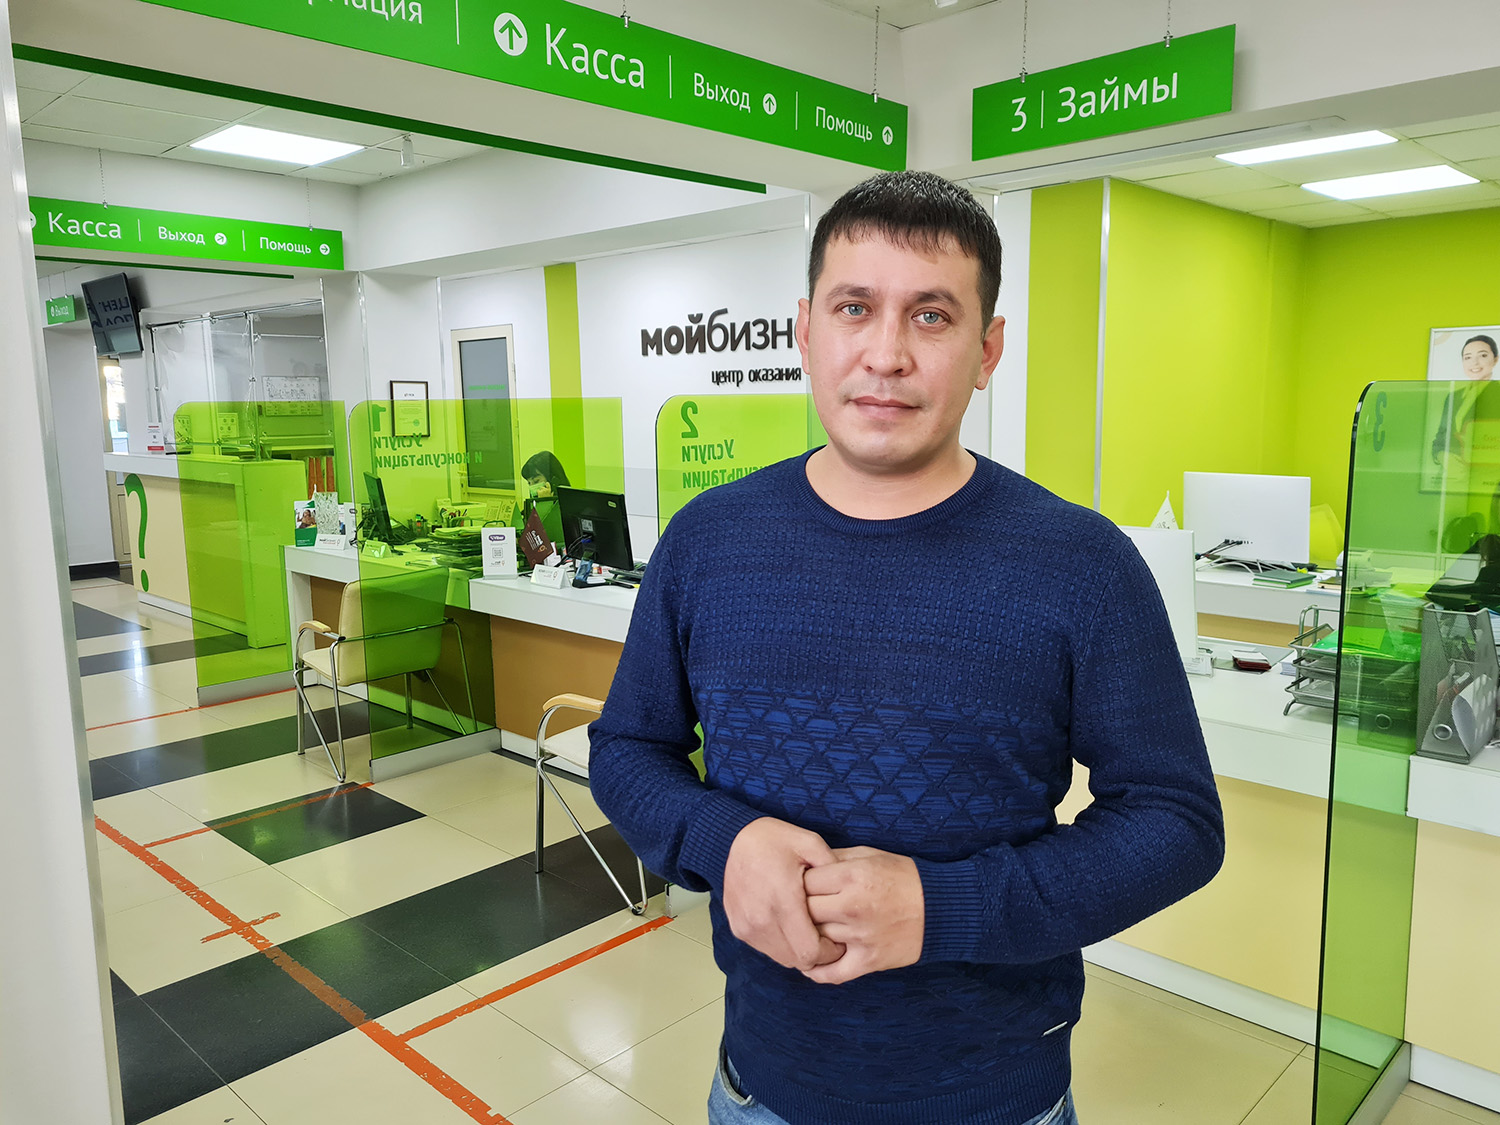 Первый самозанятый получил финансовую поддержку в центре «Мой бизнес» в Забайкалье